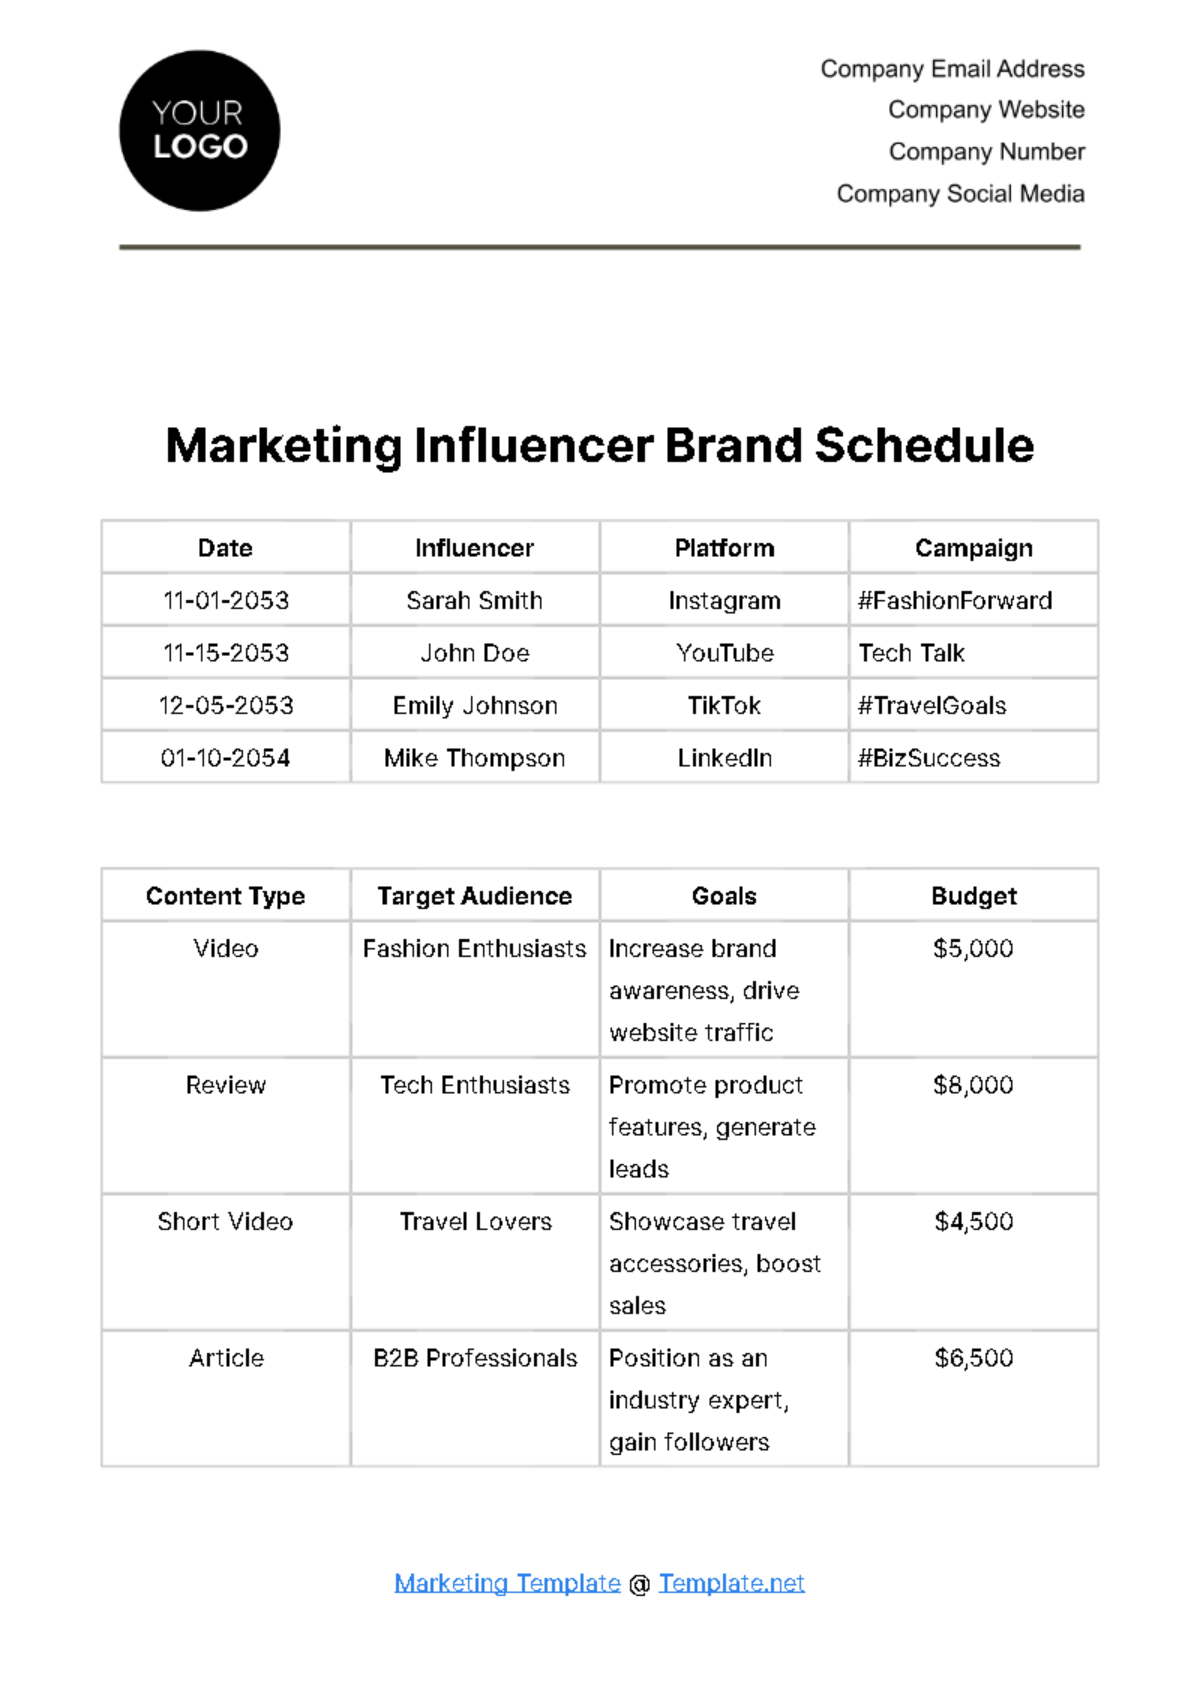 Marketing Influencer Brand Schedule Template